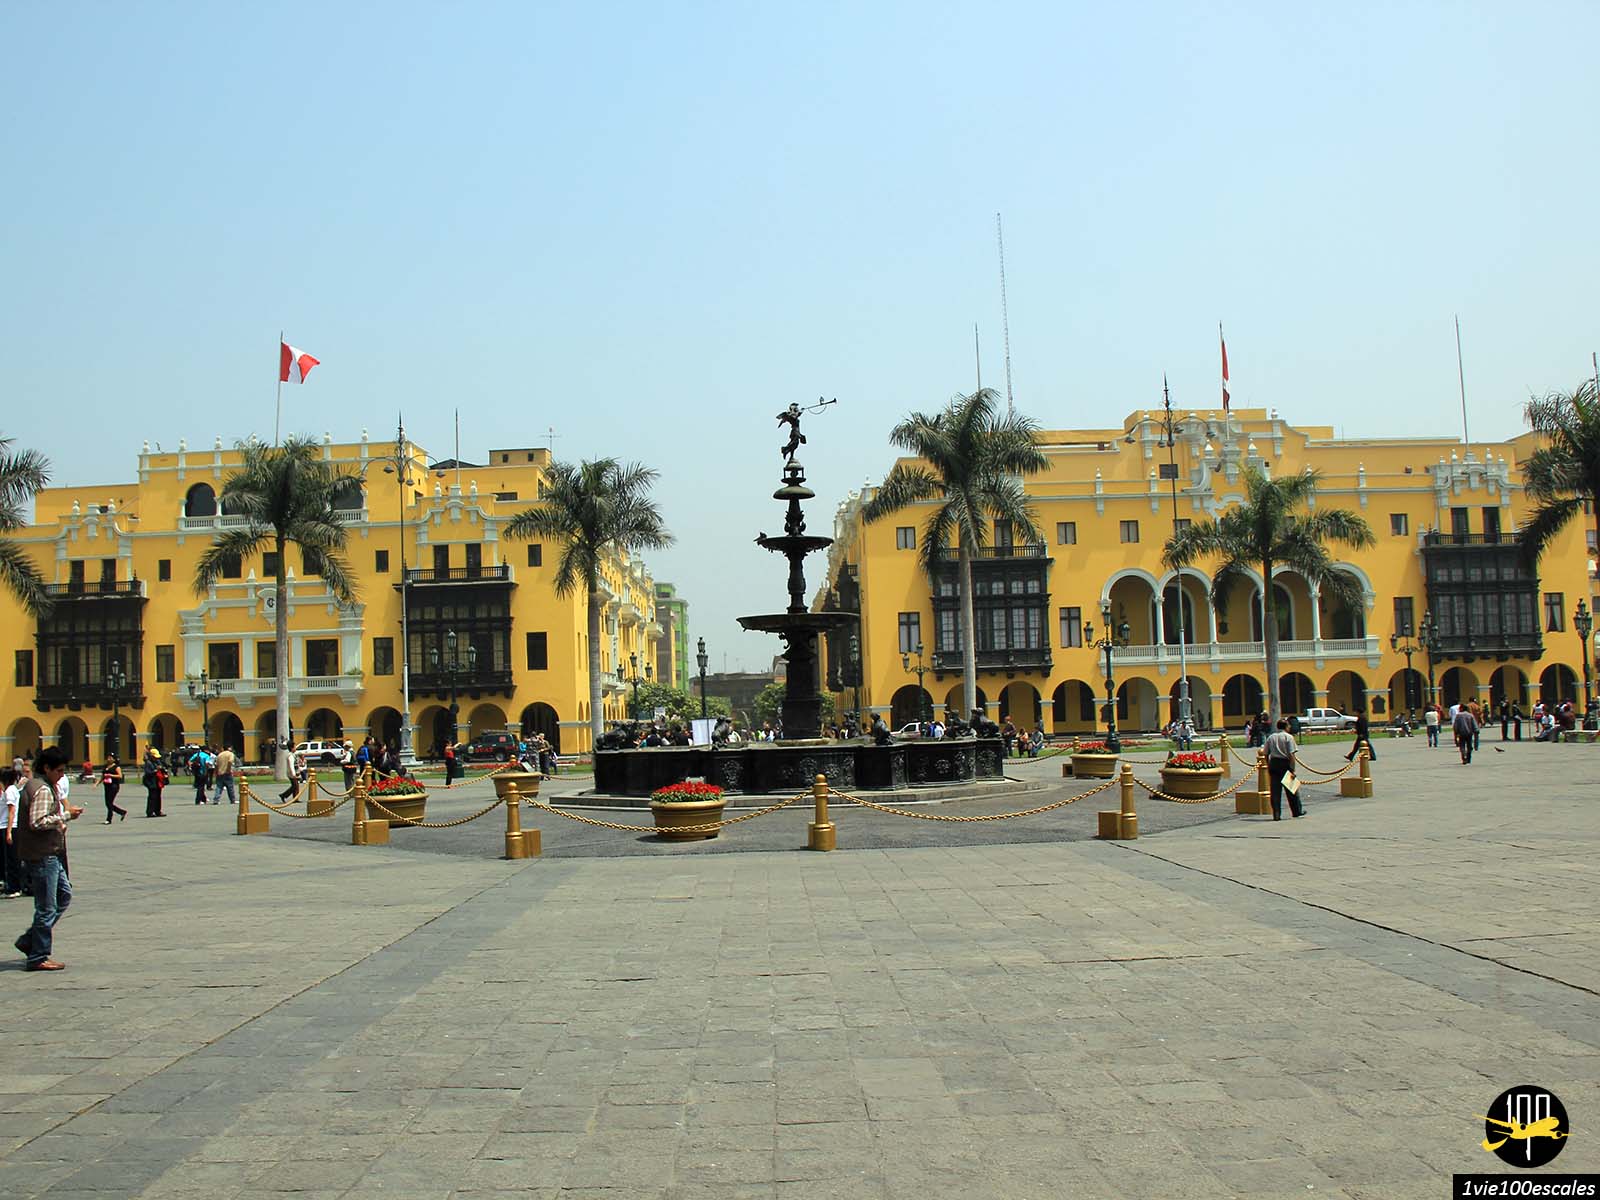 La Plaza Mayor de Lima, ou Plaza de Armas, est le principal espace public de Lima, la capitale du Pérou. Elle se situe dans le centre historique de la ville